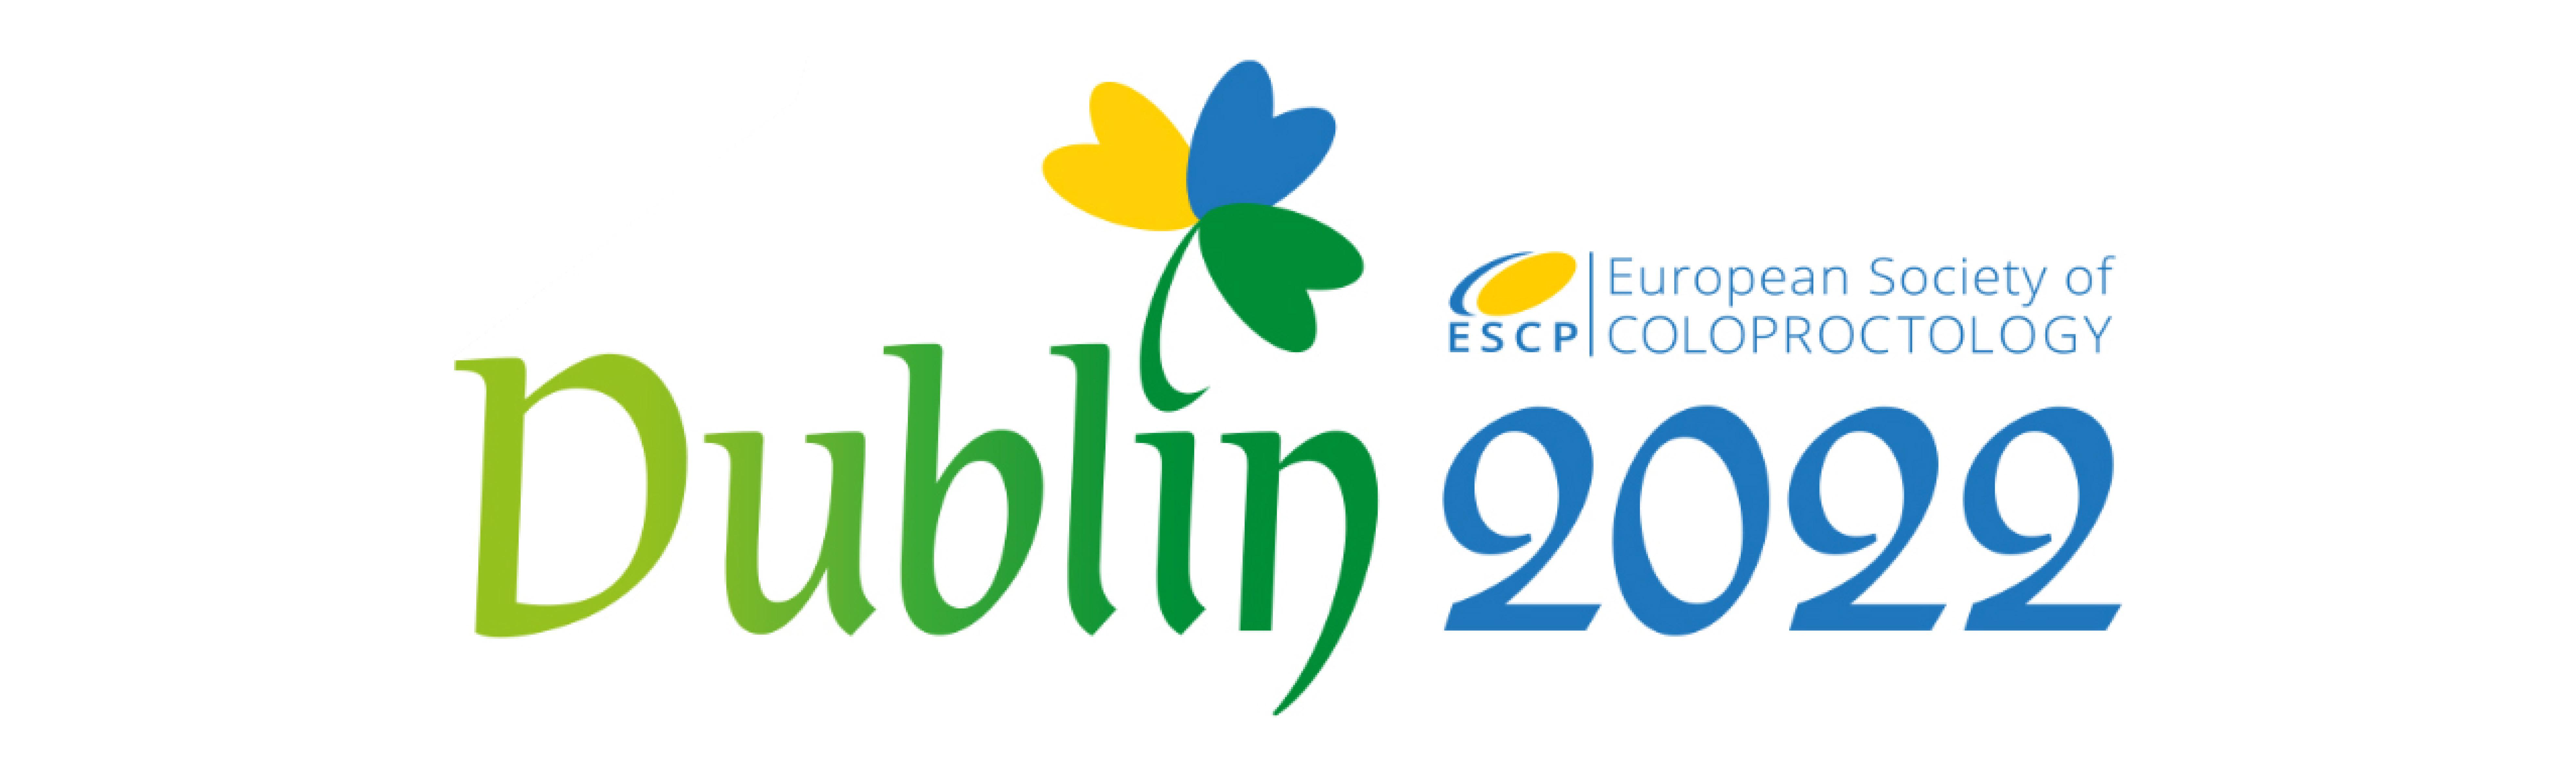 Congresso ESCP 2022, 21-23 settembre 2022